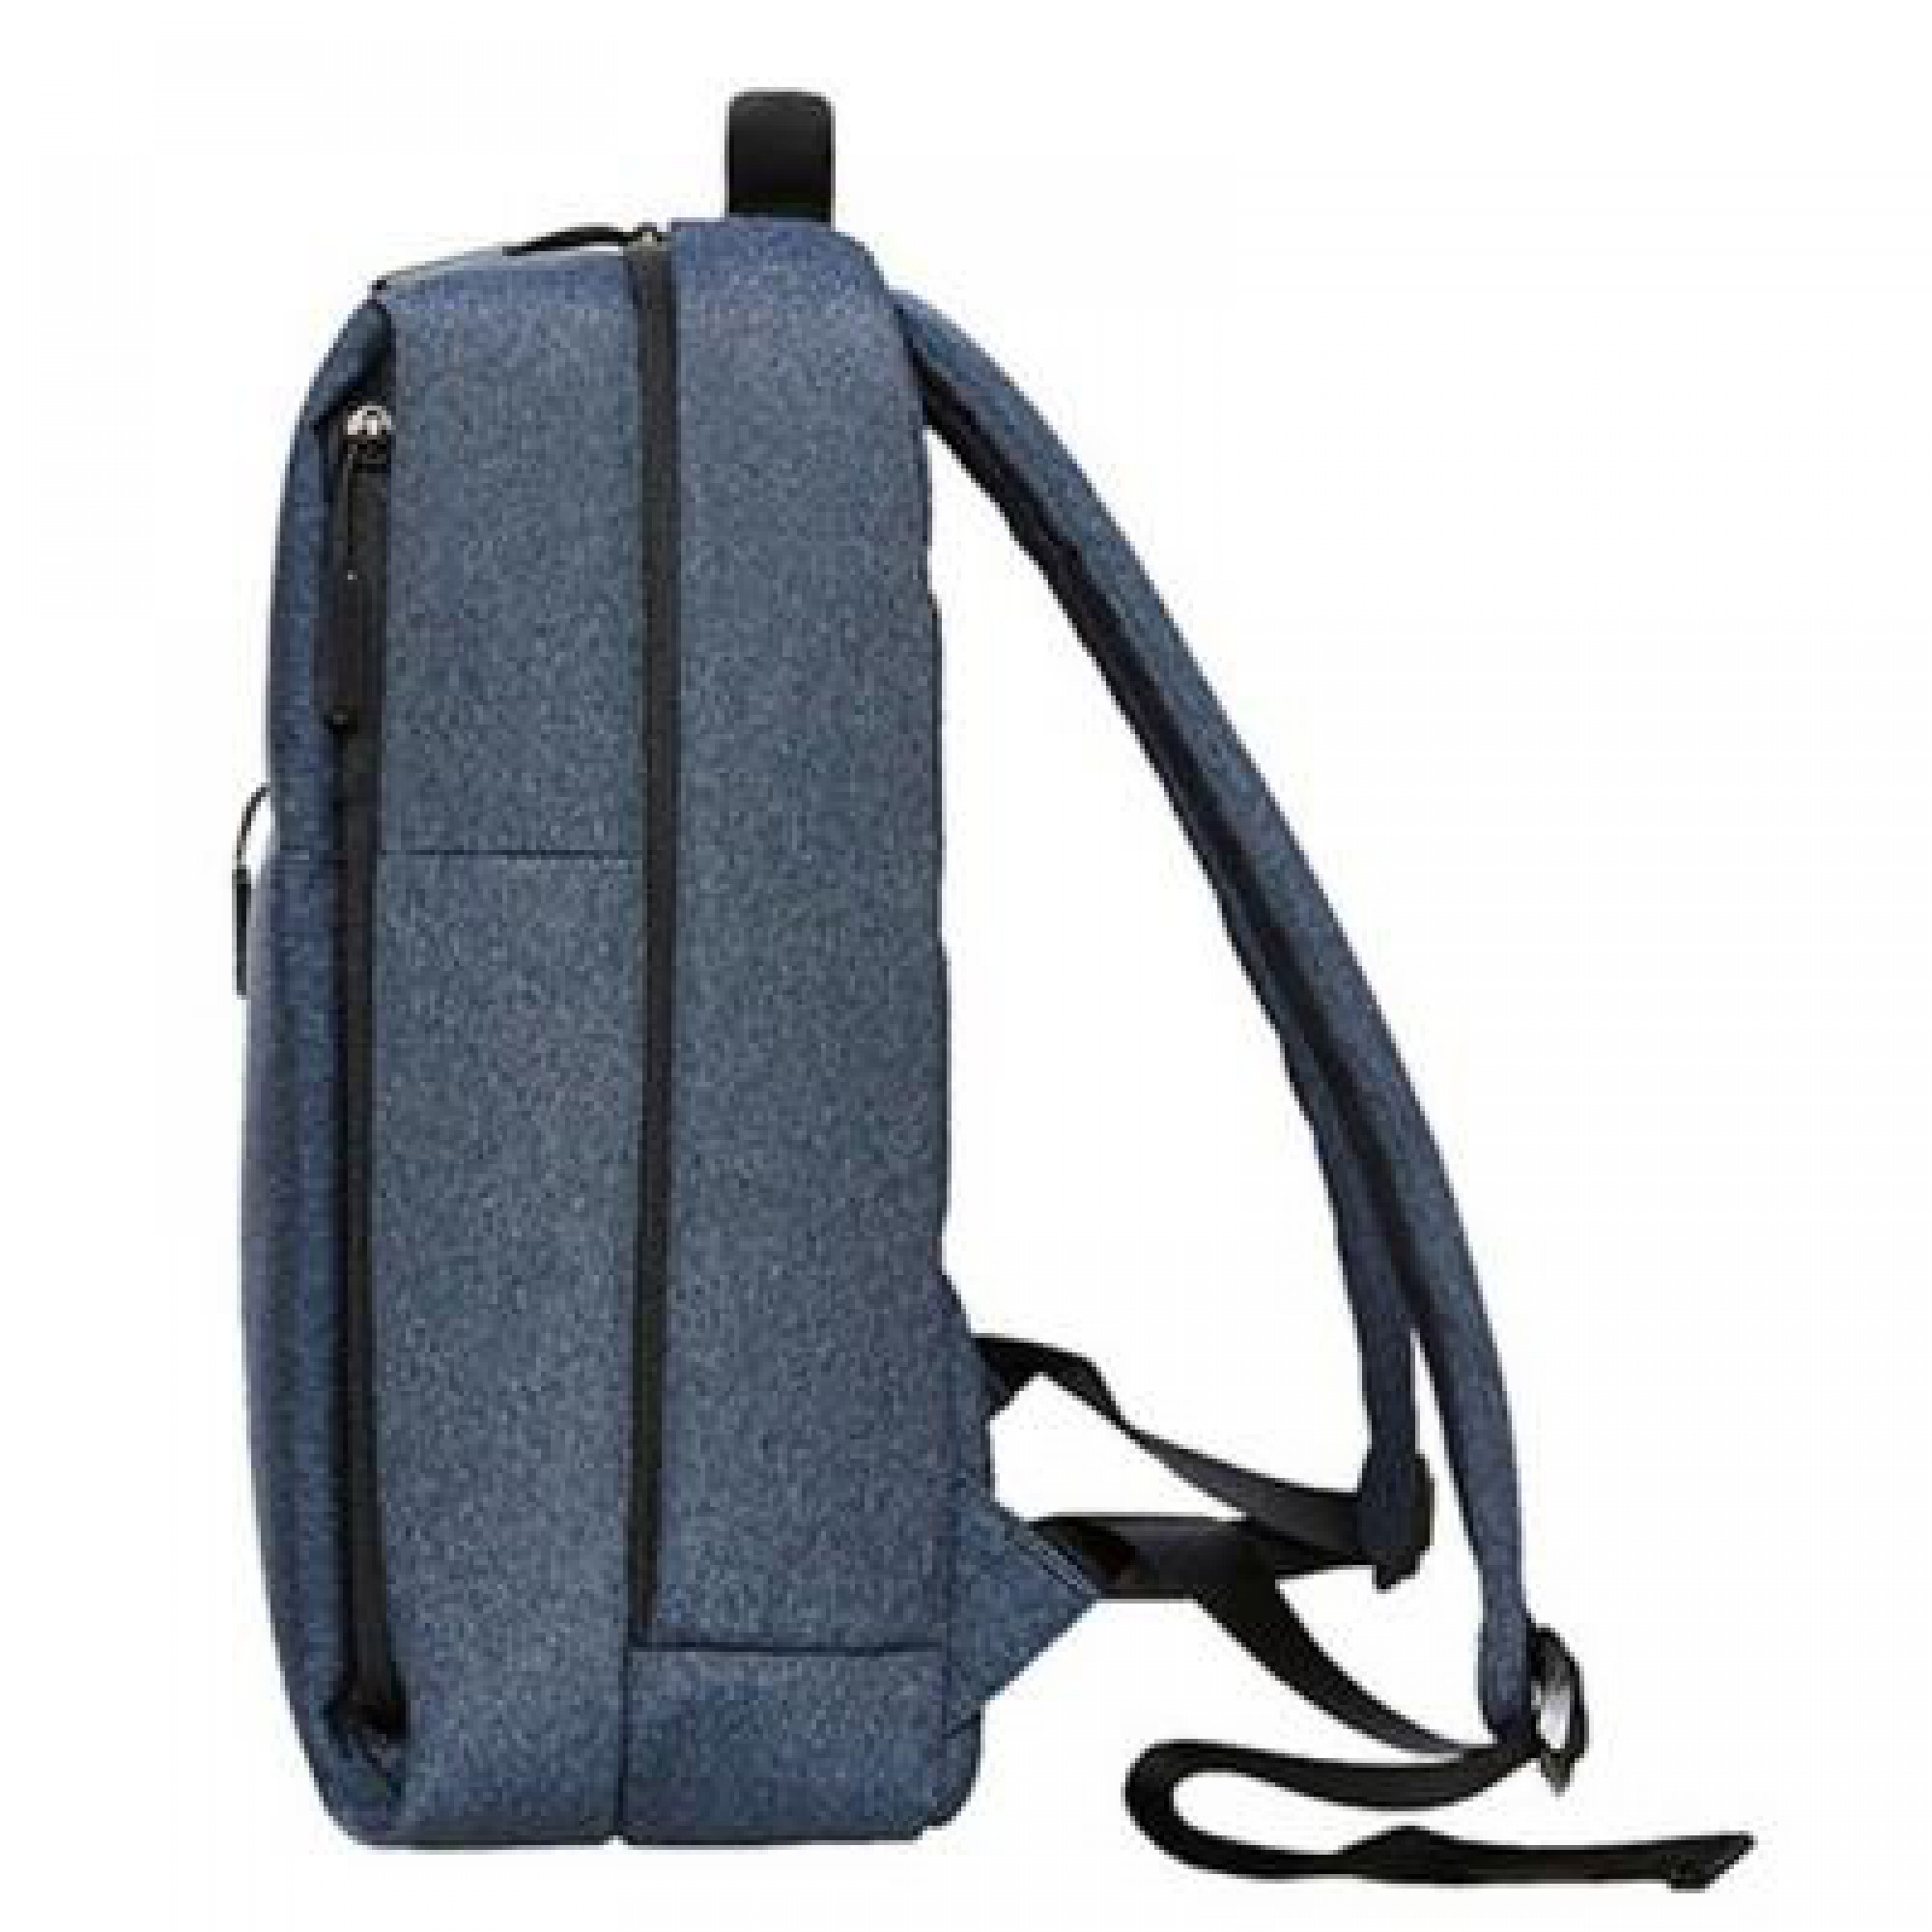 Рюкзак Xiaomi Mi minimalist urban Backpack Blue 1162900004 (ZJB4042CN)